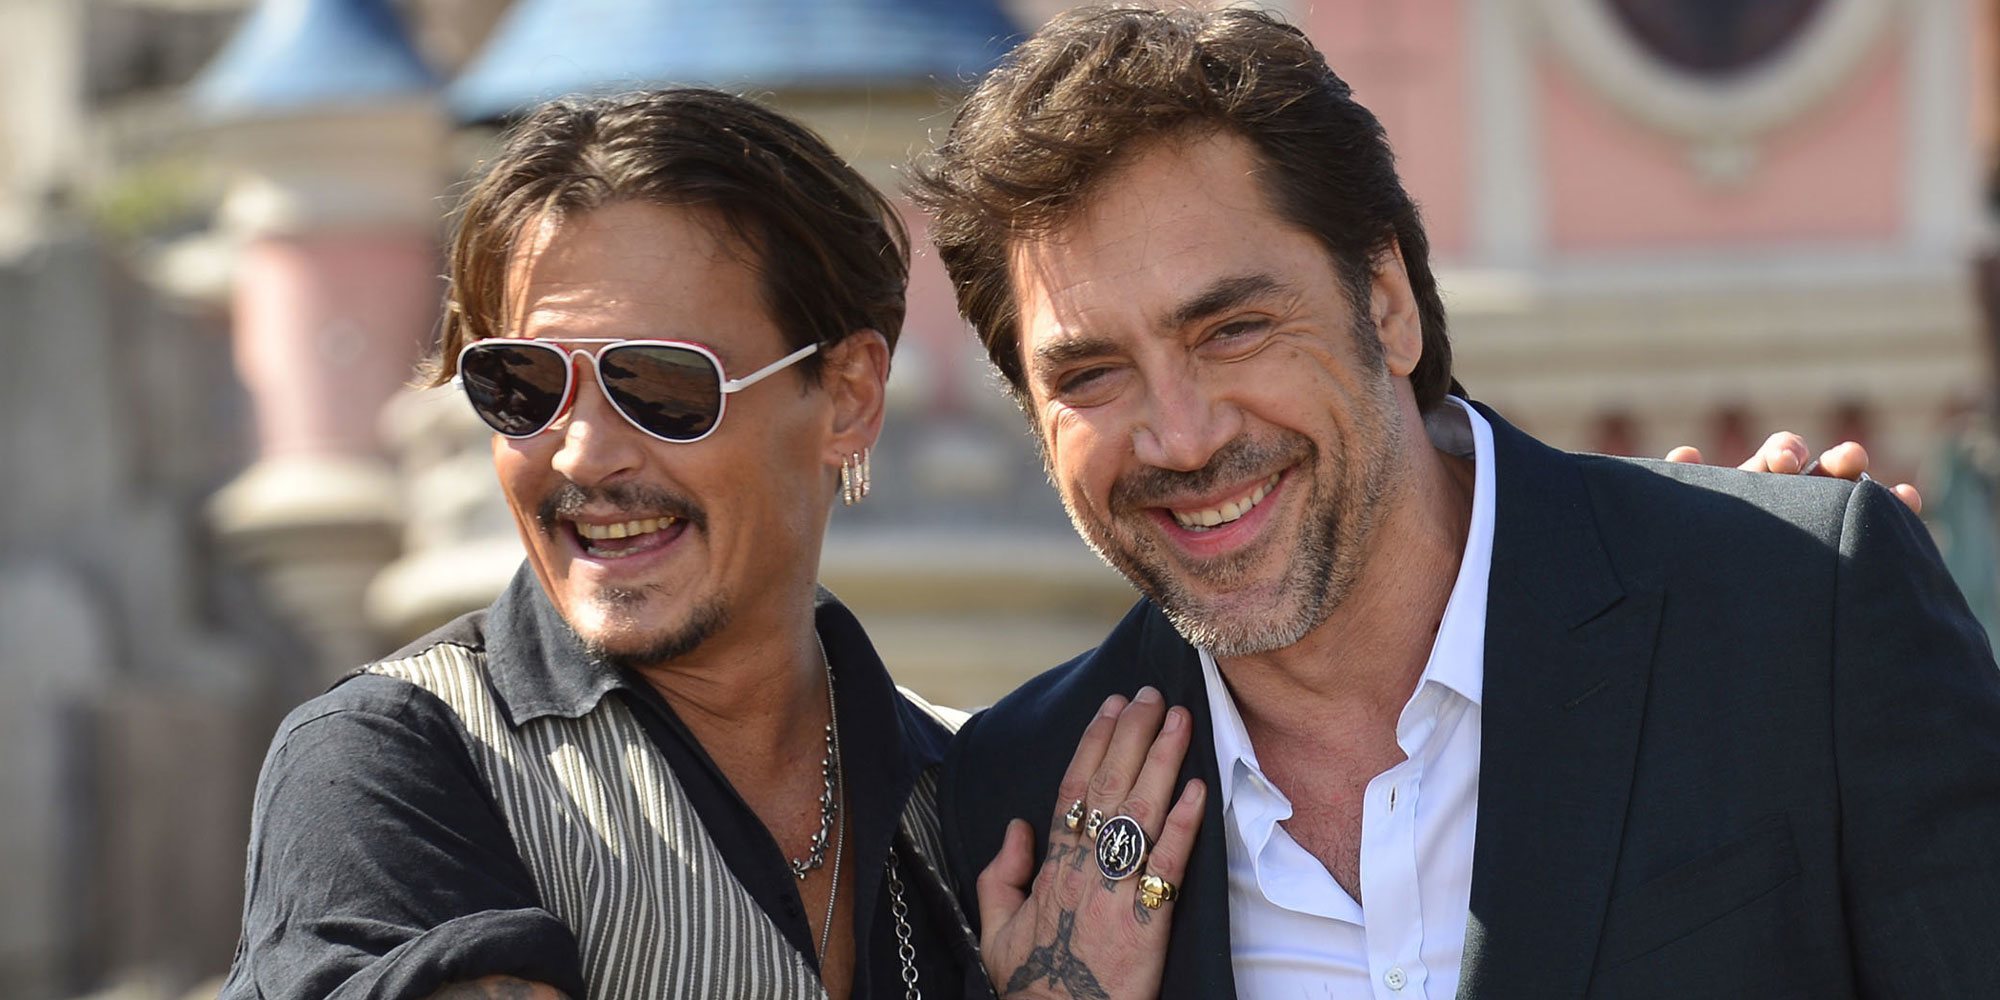 Javier Bardem también defiende a Johnny Depp en su demanda por difamación contra Amber Heard